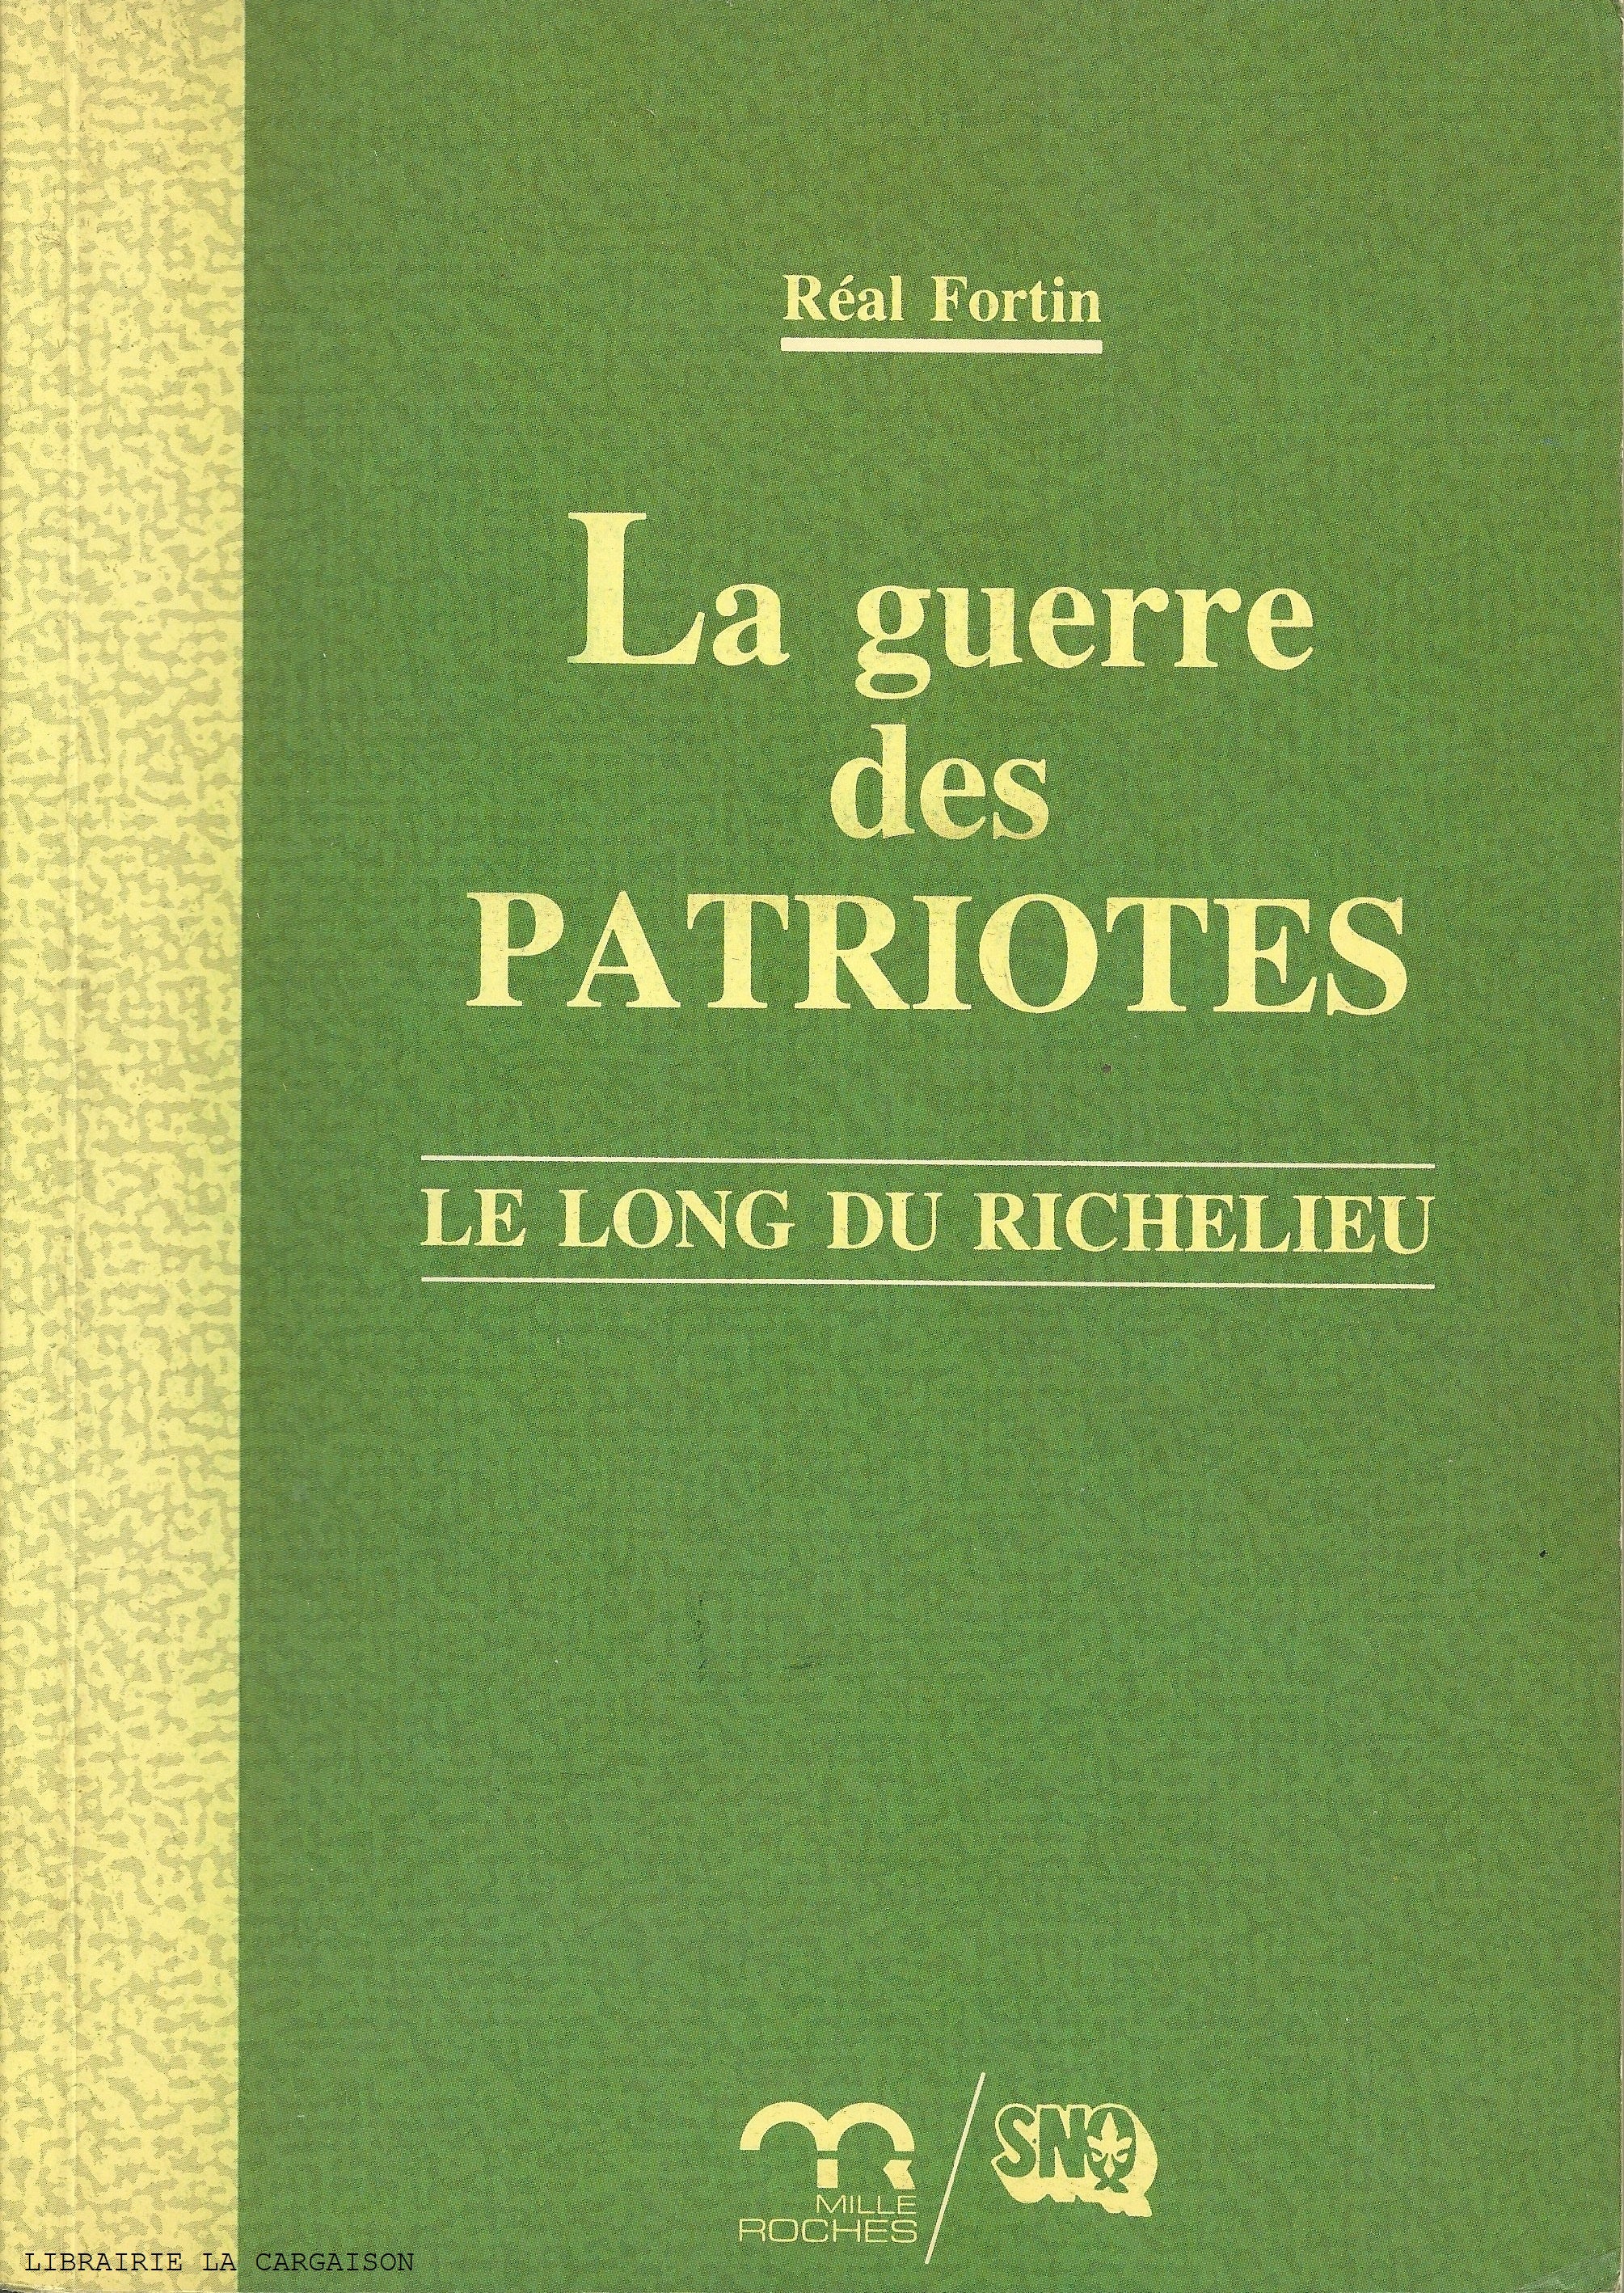 FORTIN, REAL. Guerre des Patriotes (La) : Le long du Richelieu